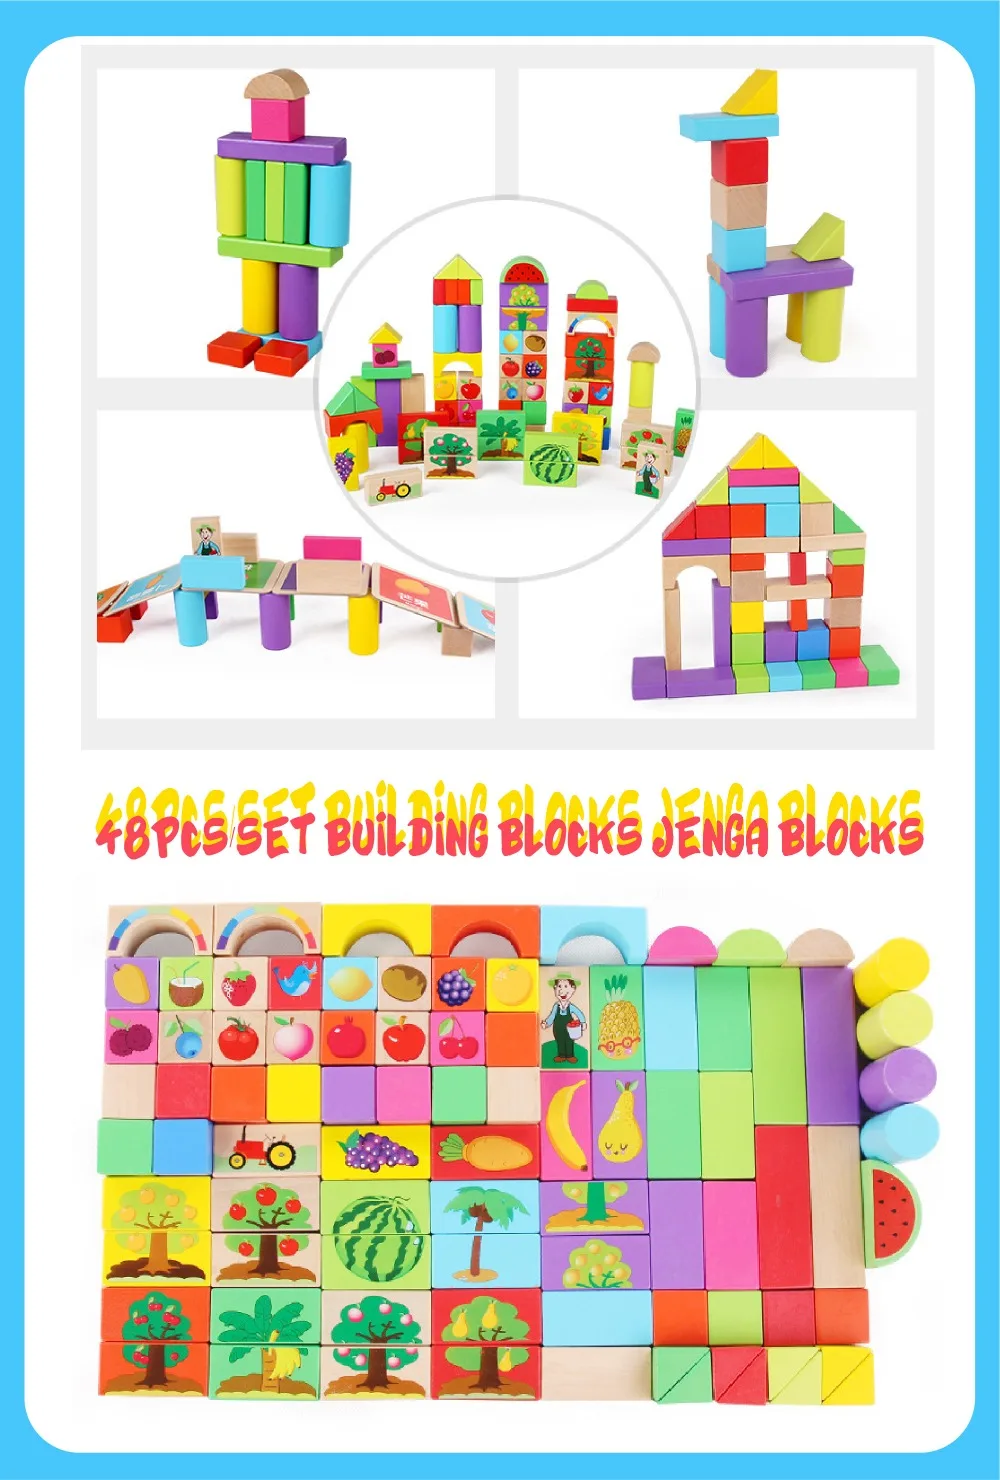 48 шт./компл. строительные блоки Дженга блоки складывается высокий блок игрушки семья/вечерние лучший подарок для детей развивающие игрушки